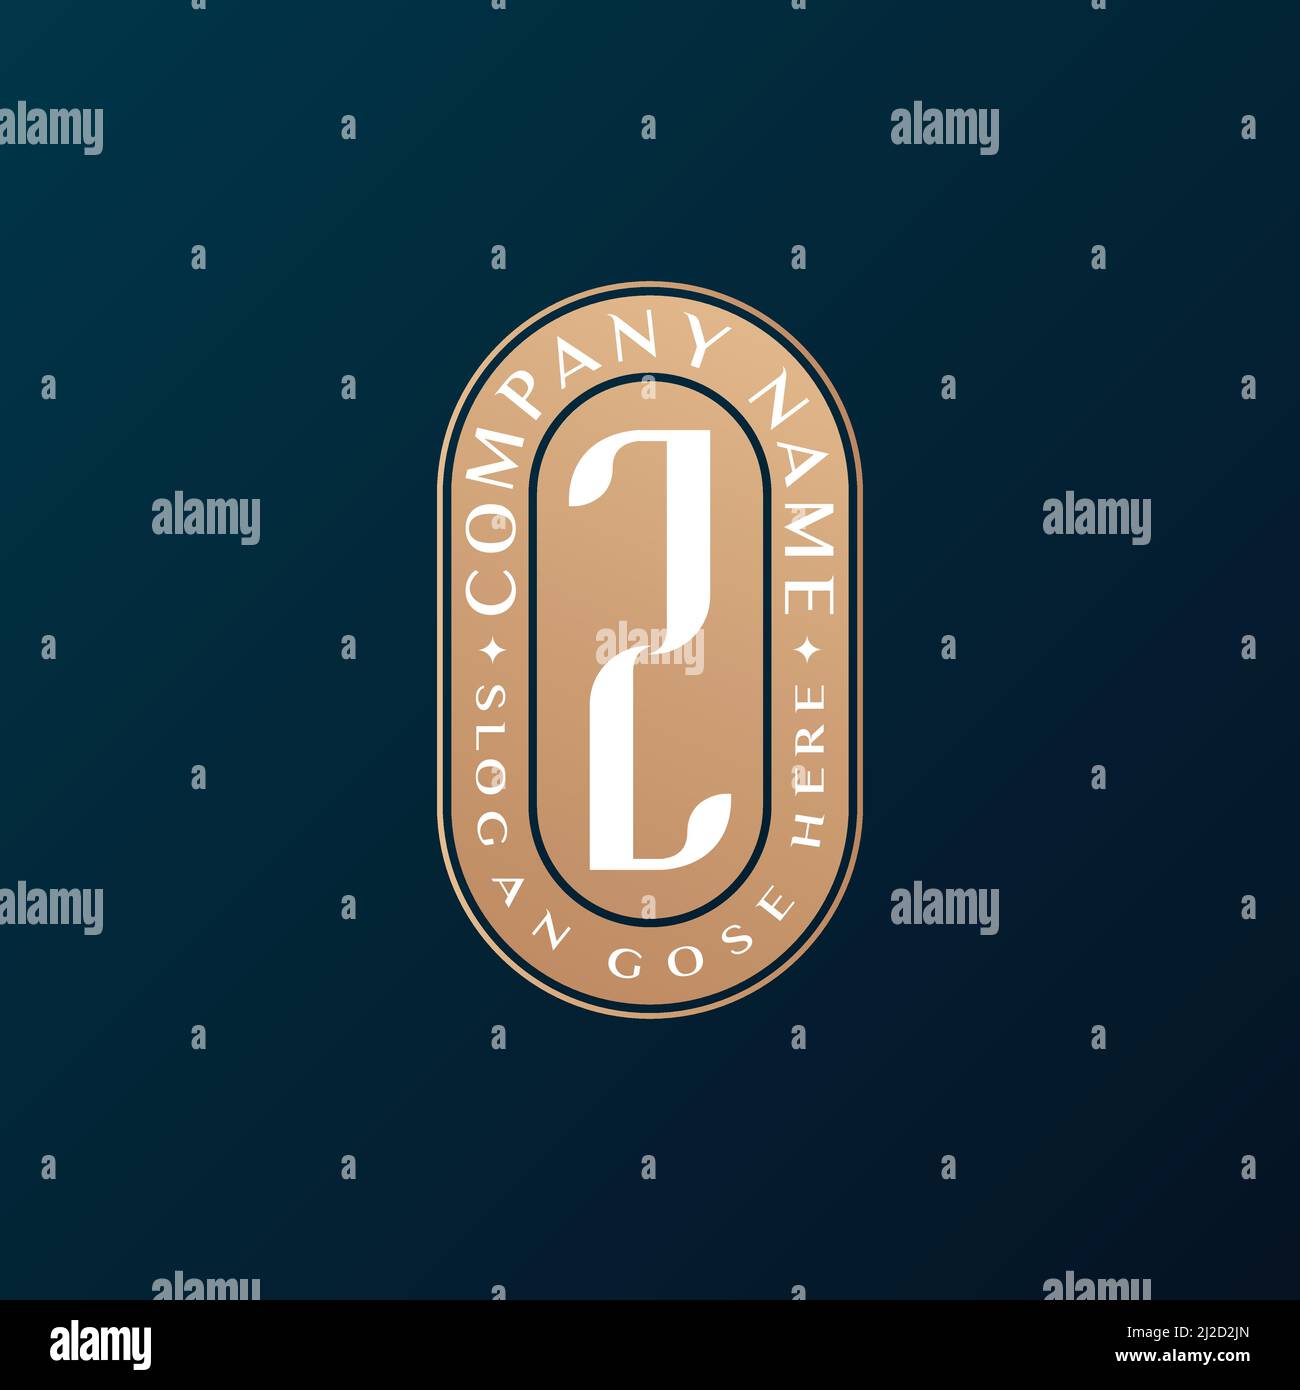 Abstrait Emblem Premium luxe identité d'entreprise élégant lettre Z logo design Illustration de Vecteur